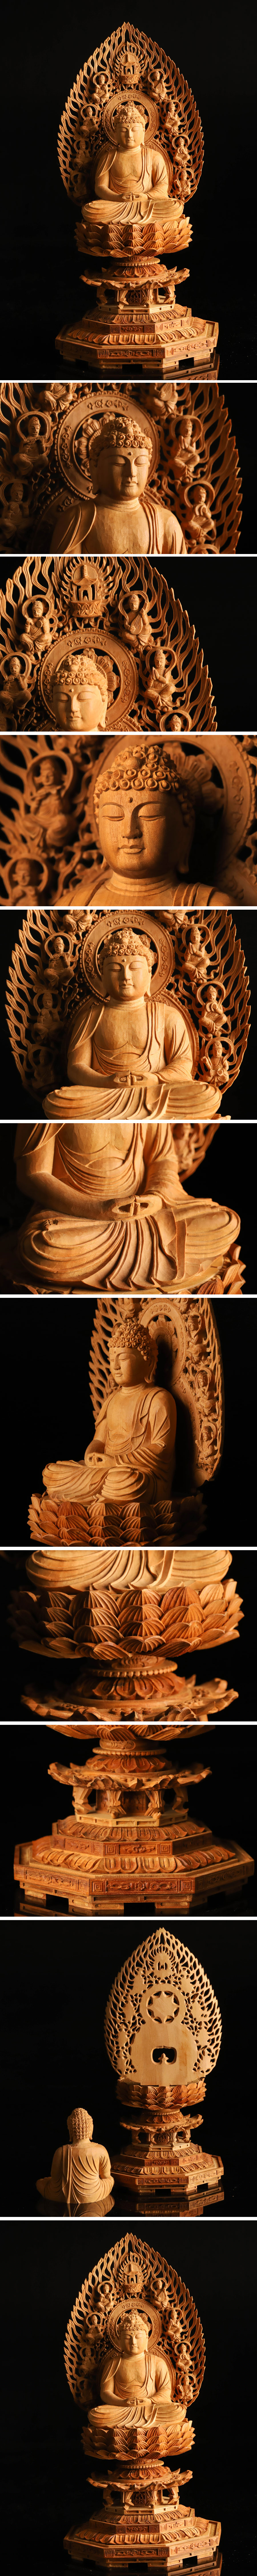 【HOT好評】仏教美術 白檀 木彫仏像 座像 重量794g KH412 その他